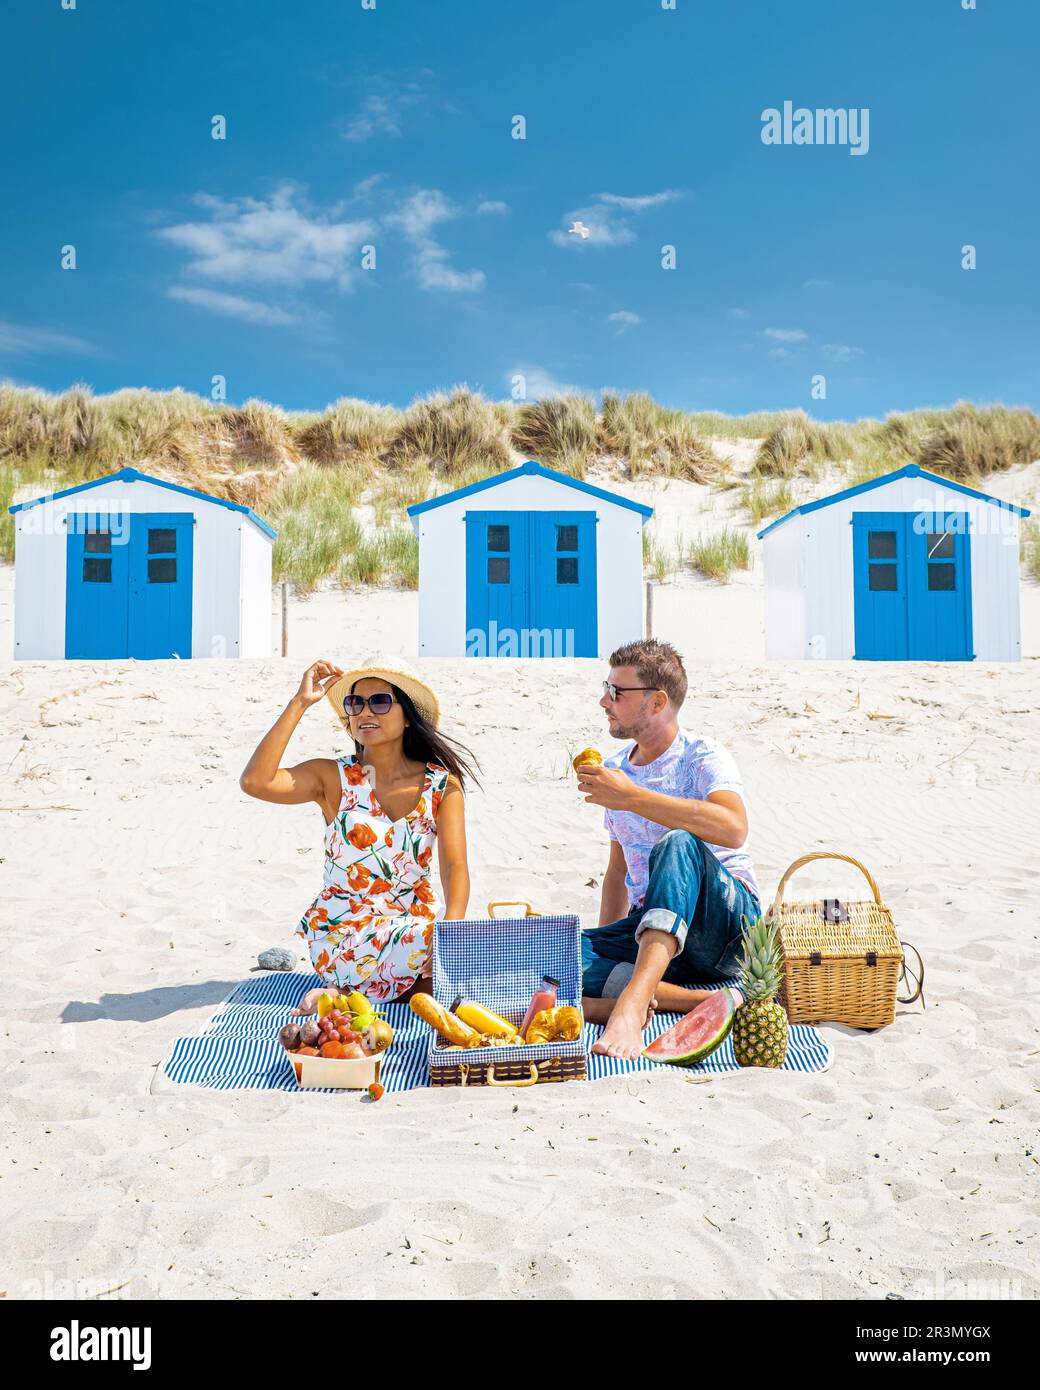 Picknick am Strand von Texel Netherlands, ein Paar mit Picknick am Strand von Texel Stockfoto